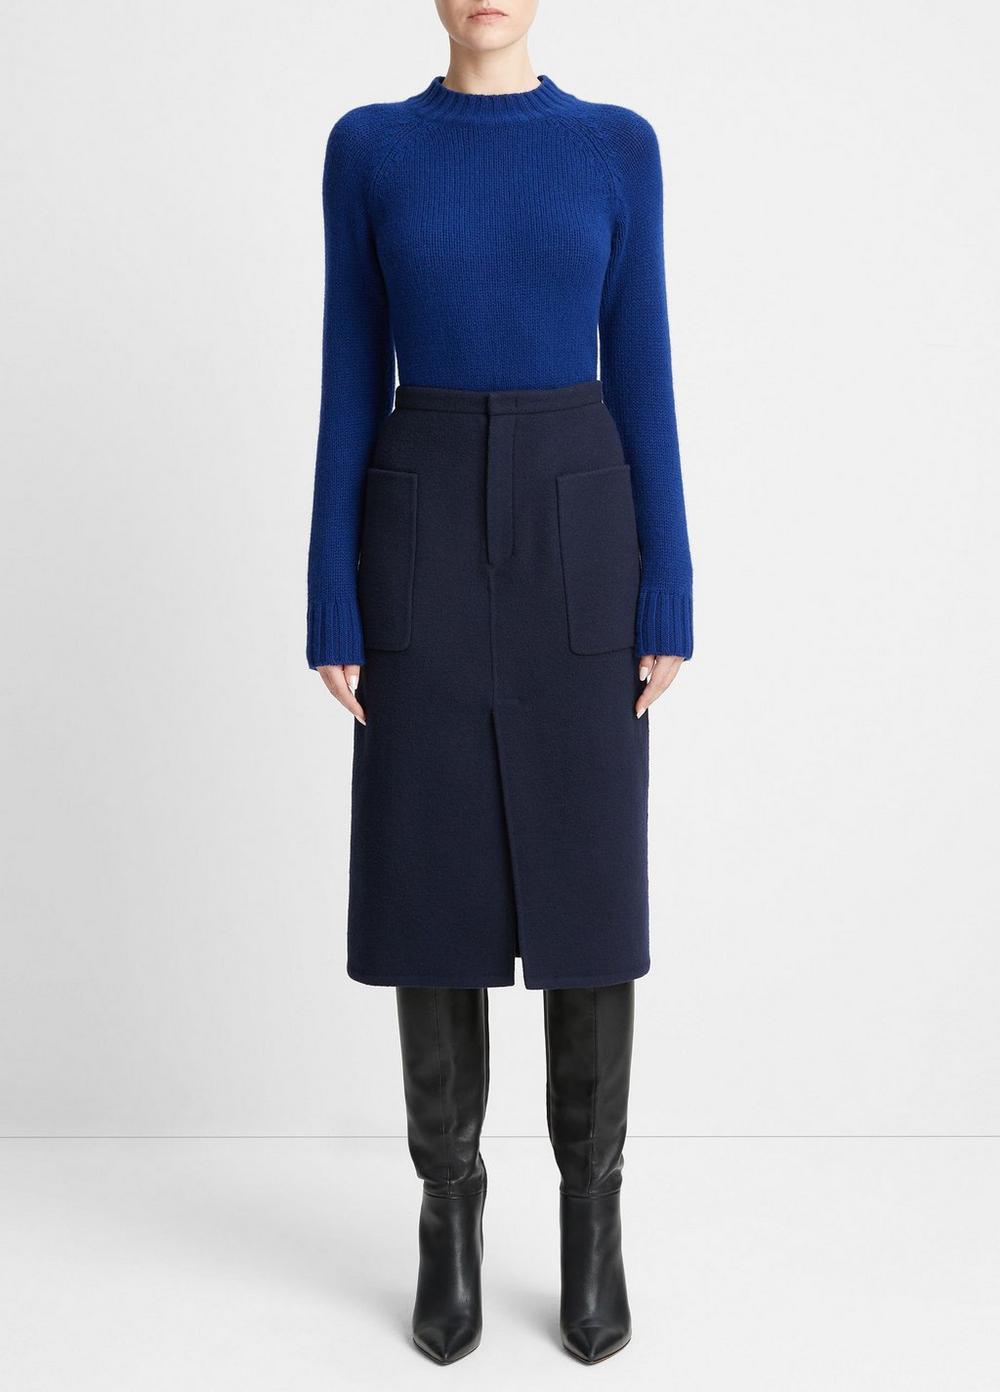 Brushed Wool-Blend Pencil Skirt, Deep Caspian, Size 4 Vince